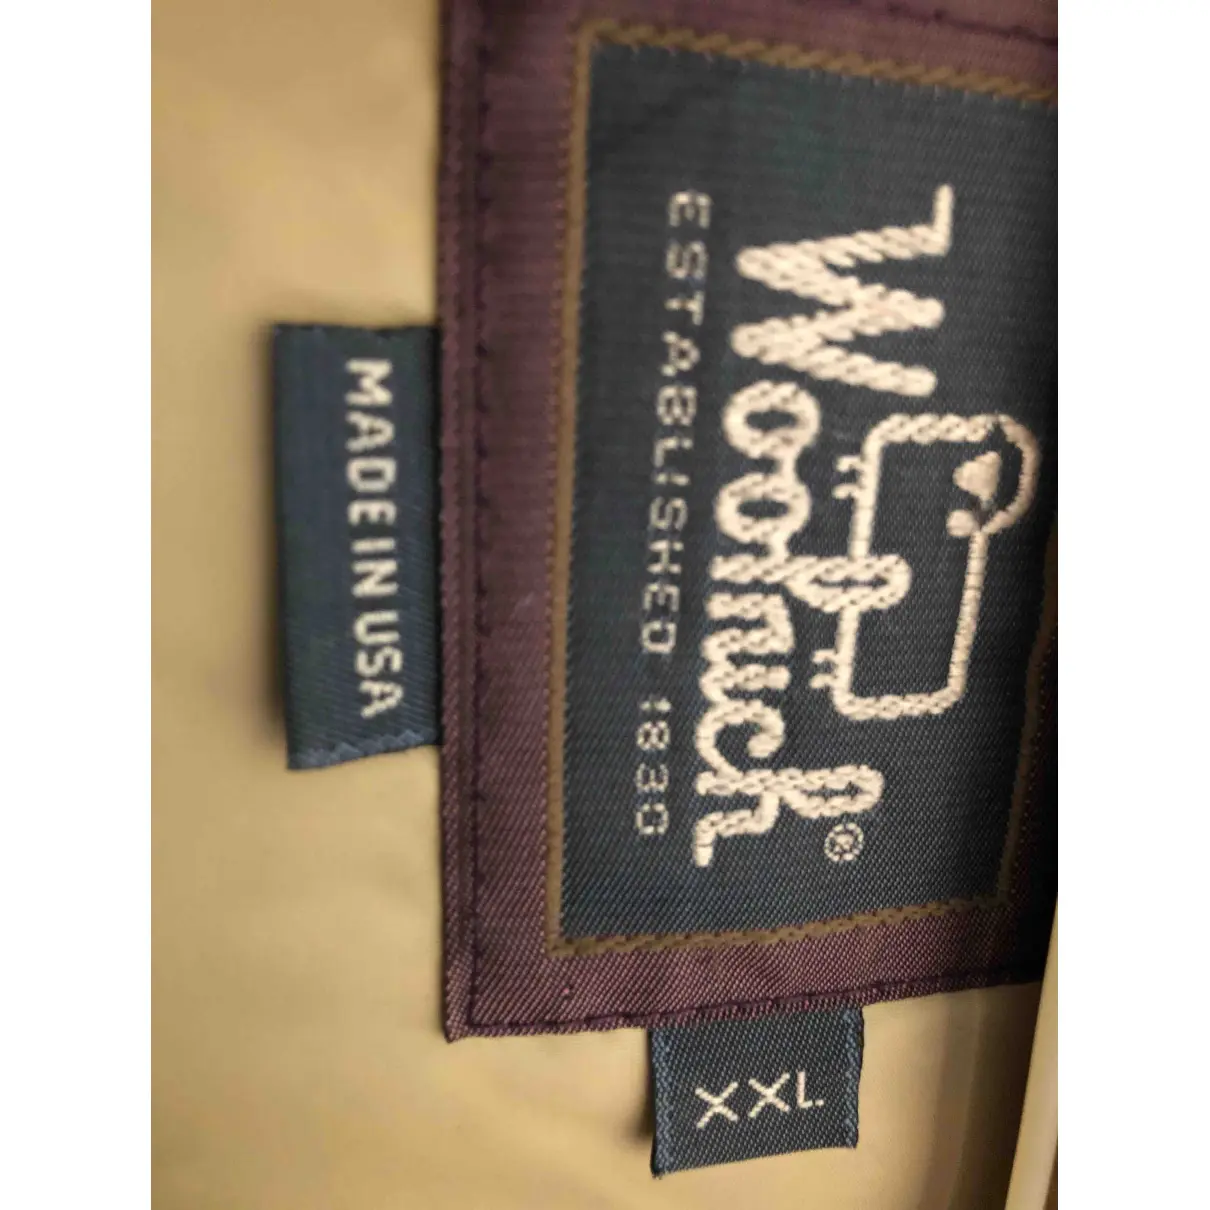 Luxury Woolrich Jackets  Men